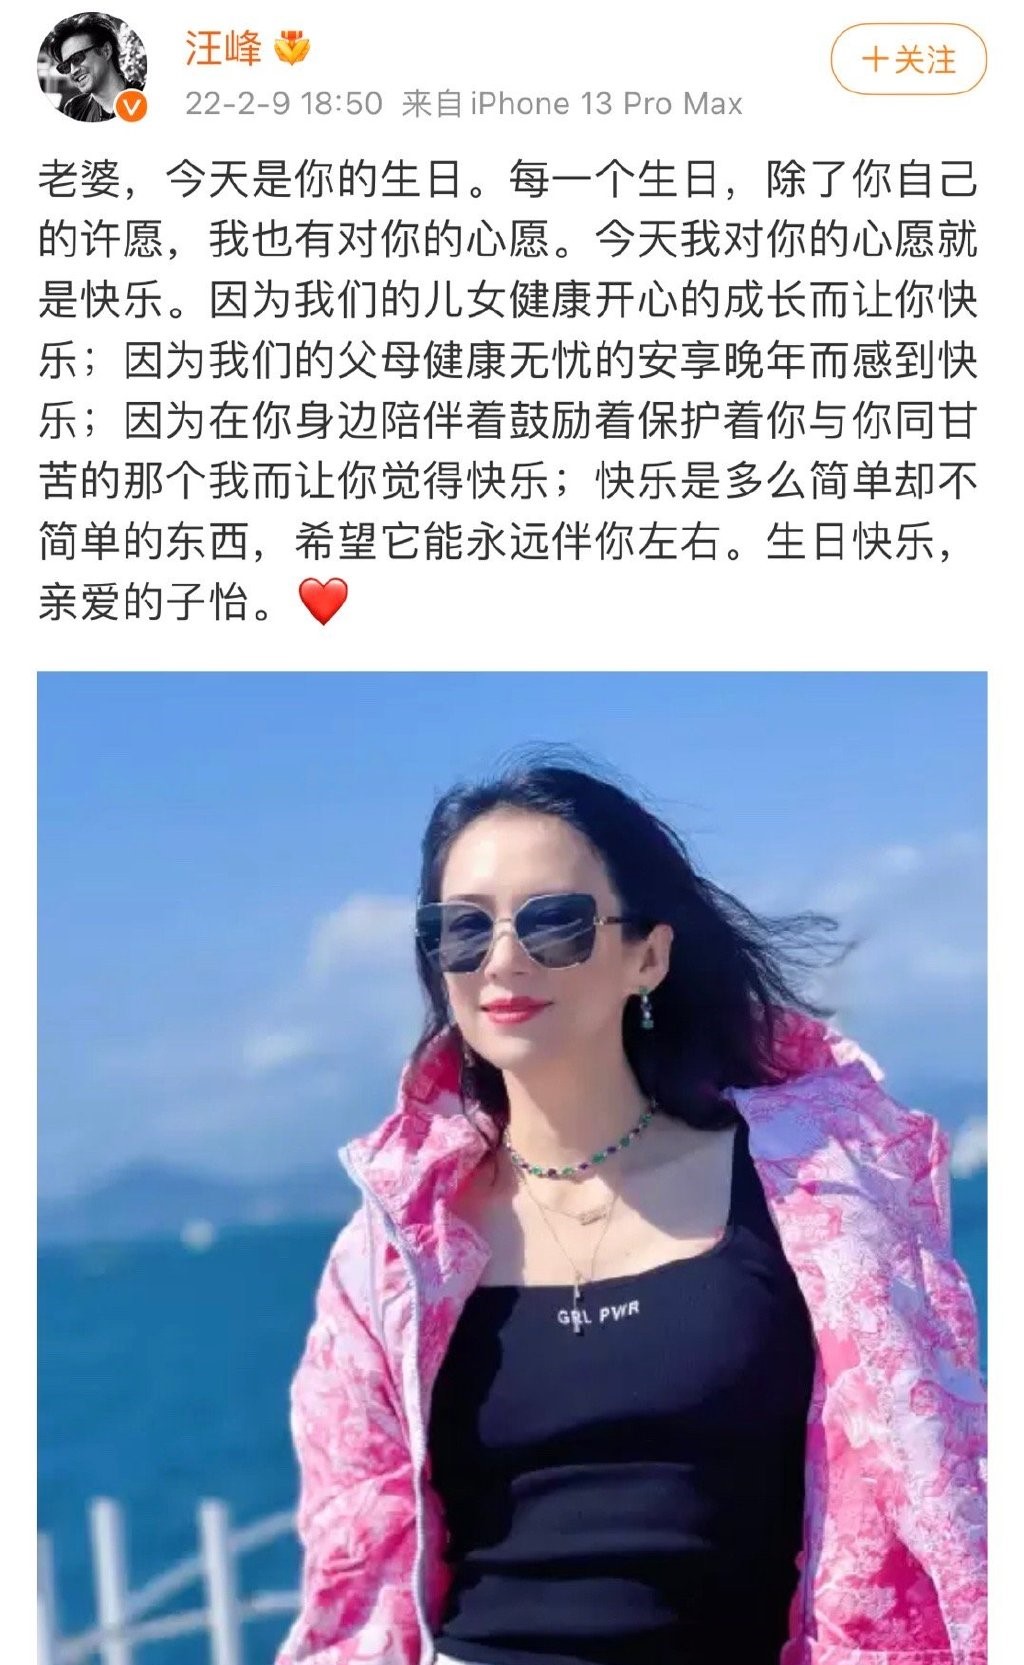 网友挖出汪峰每年都会在微博祝福老婆生日，高调晒恩爱，惟今年却反常地没有公开发文祝贺，因而被推测婚变早有先兆。